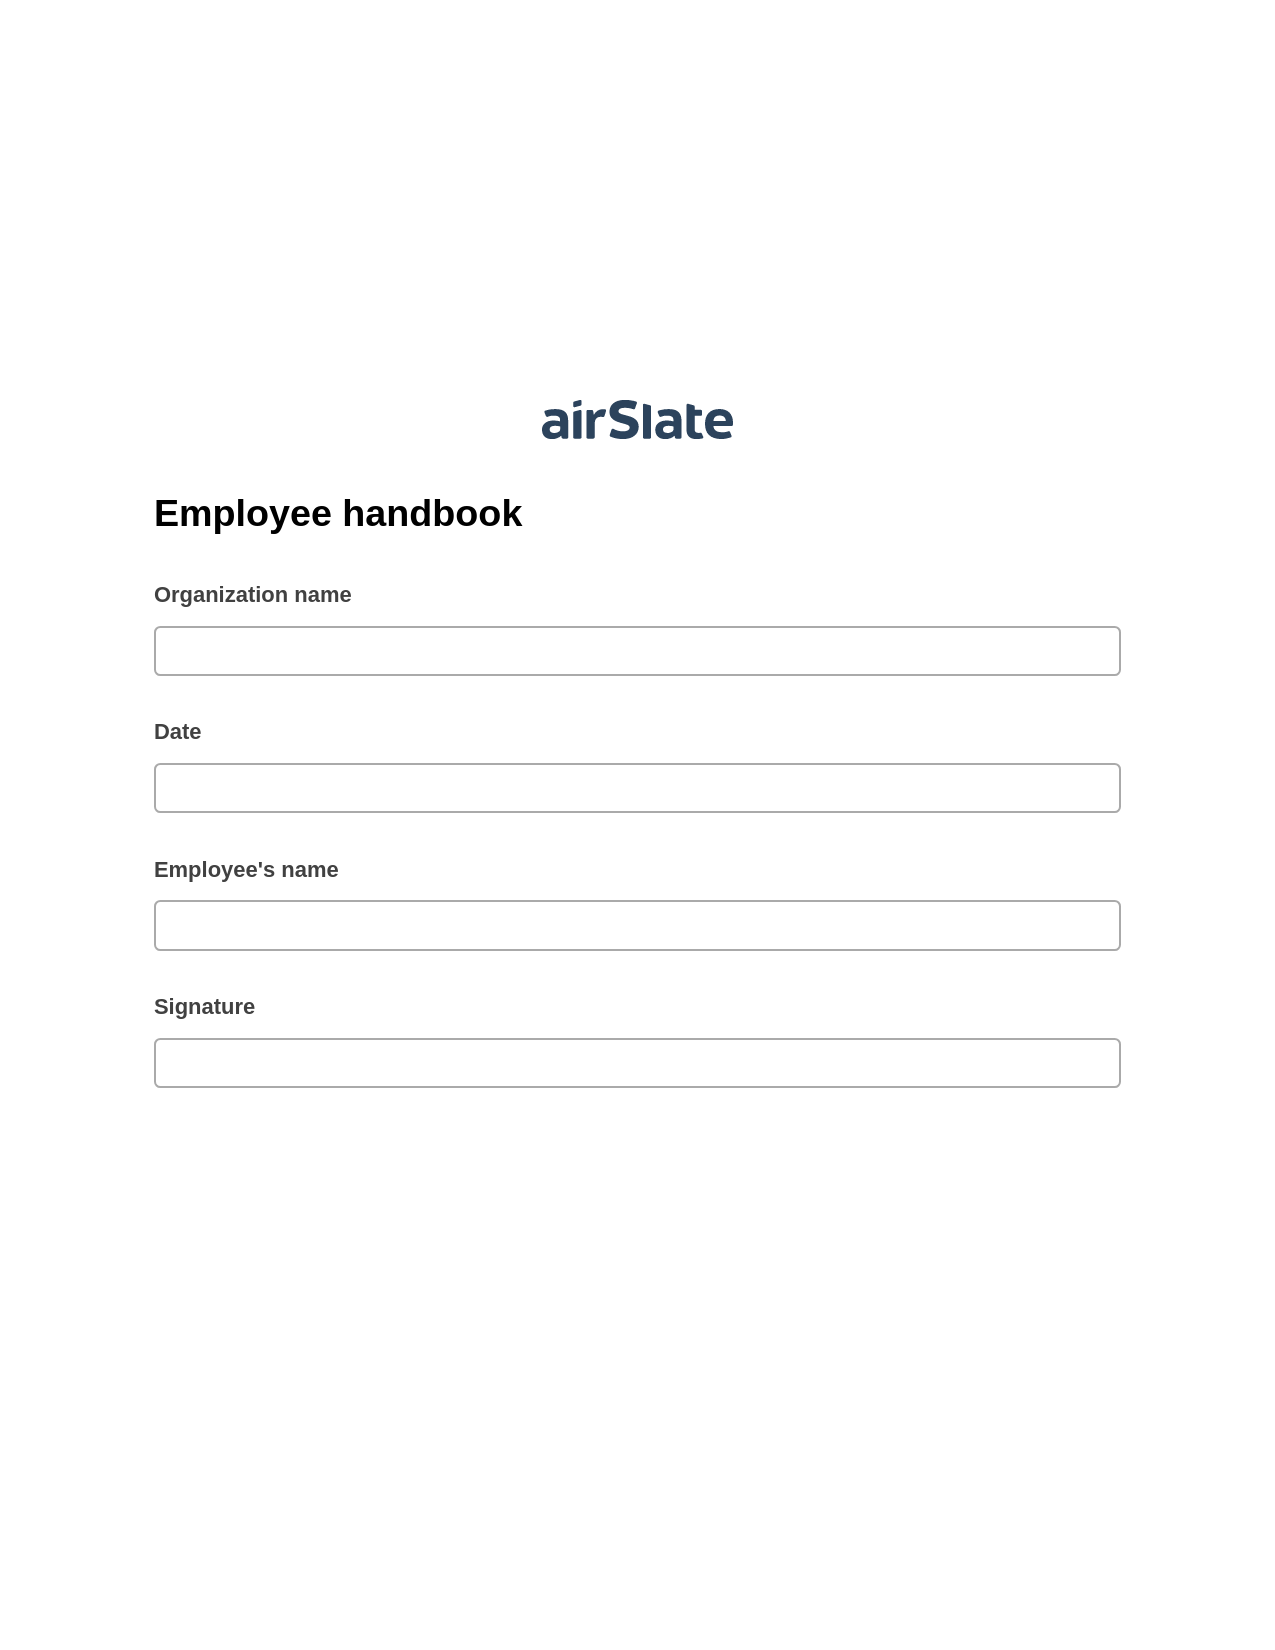 Employee handbook Pre-fill Document Bot, Google Calendar Bot, Archive to SharePoint Folder Bot